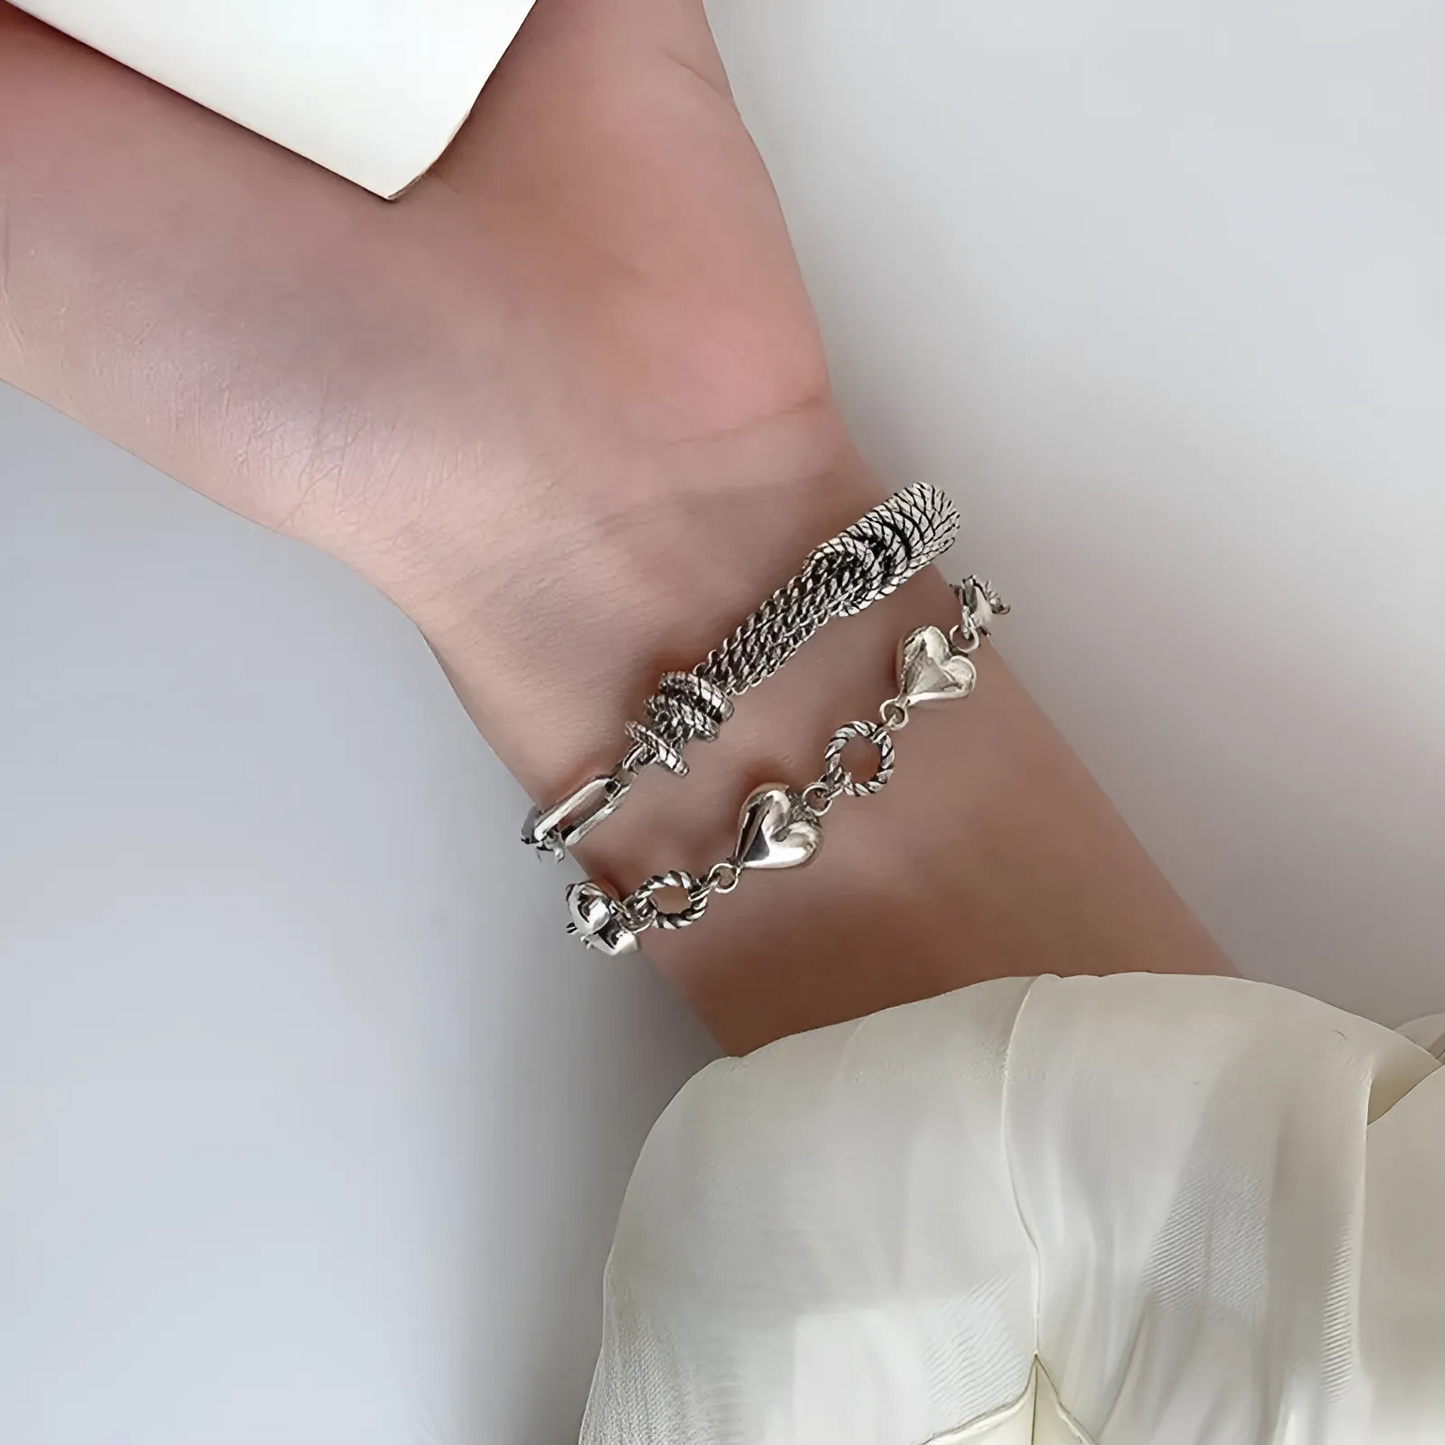 Silver Heart Cuff Bracelet - Trendy Metal Jewelry